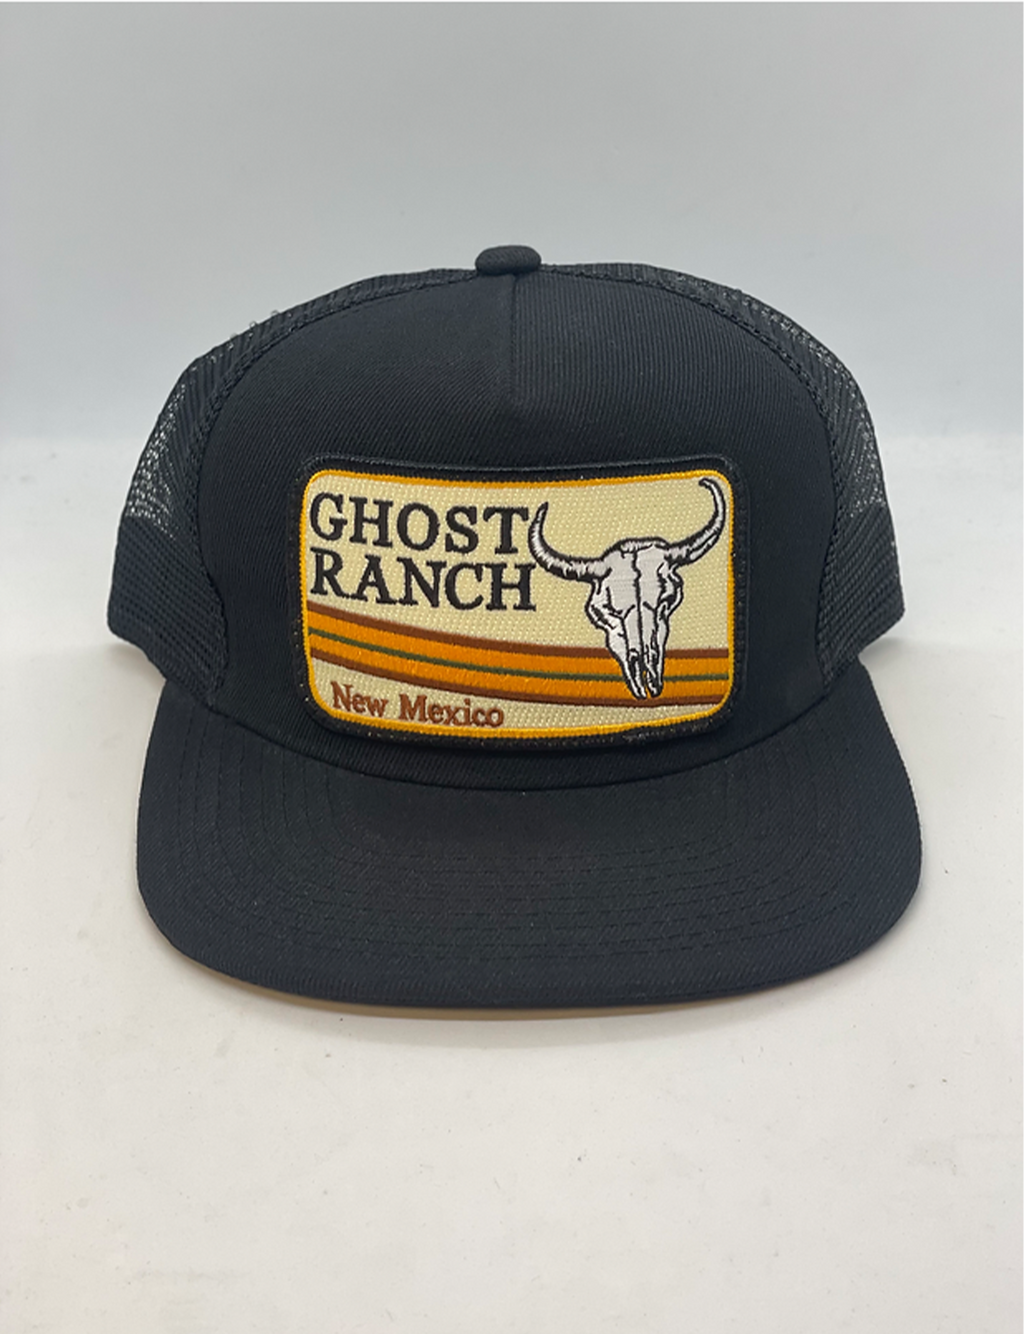 Trucker Hat, Ghost Ranch